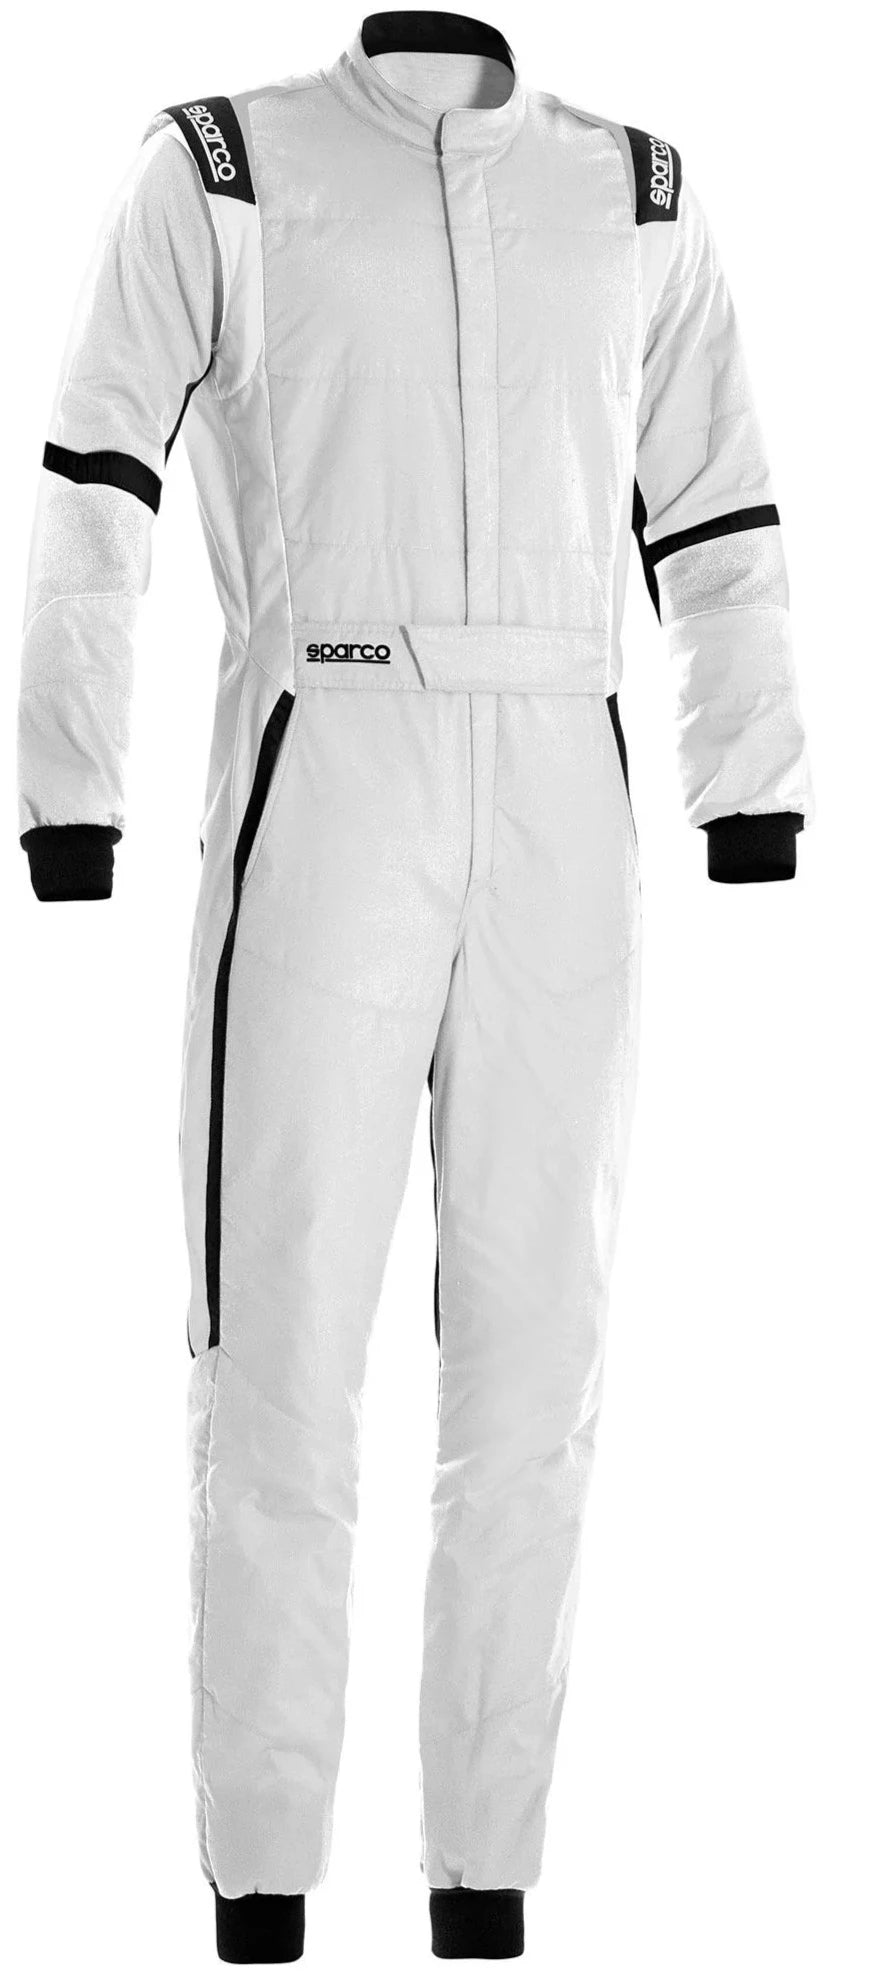 Sparco X-Light Race Suit White / Black Front Image